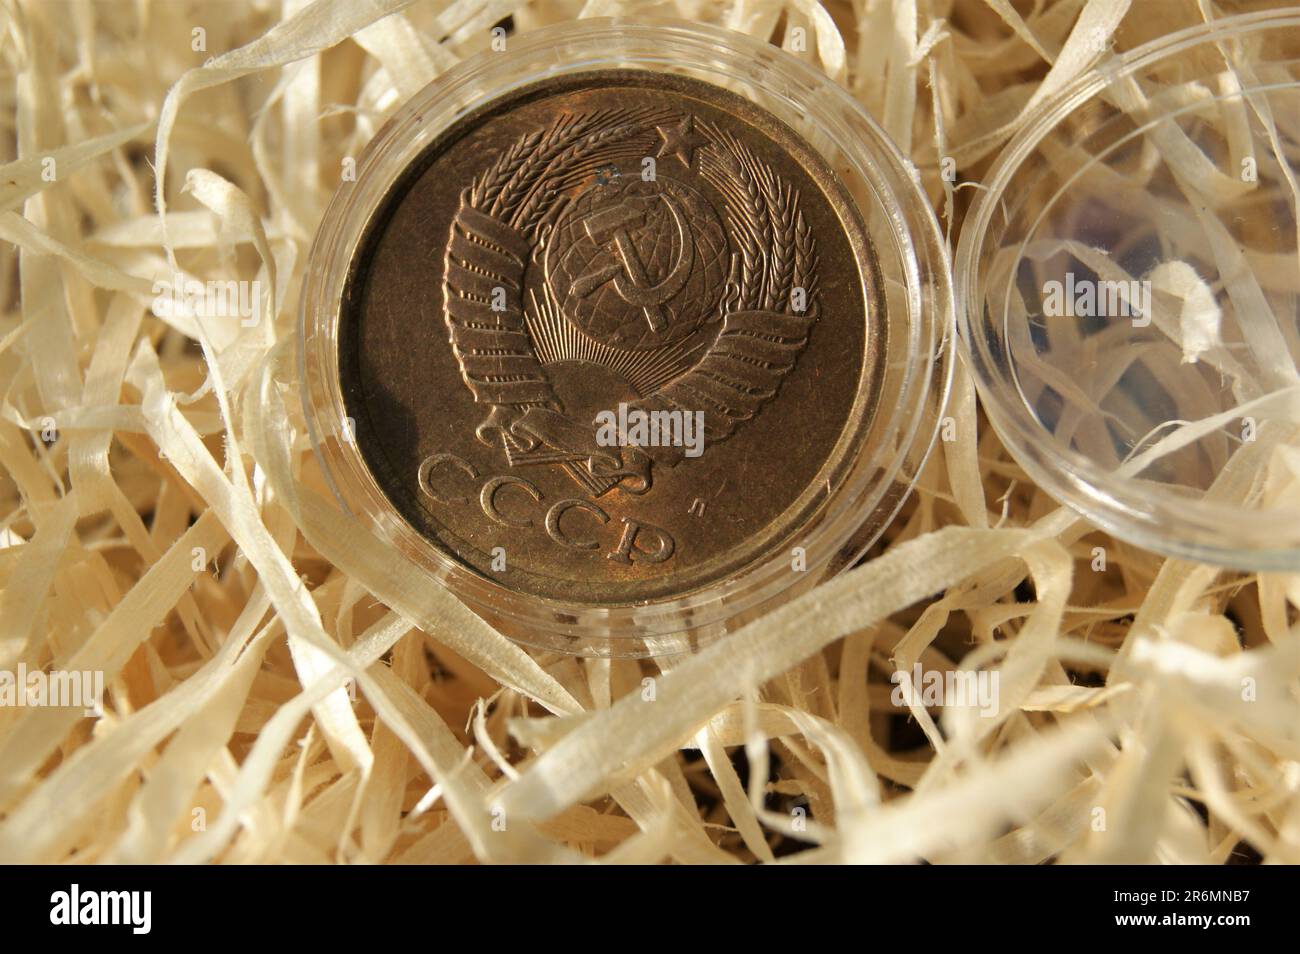 Una moneta demonetizzata. Moneta dell'Unione Sovietica 5 kopecks obverse. Foto Stock